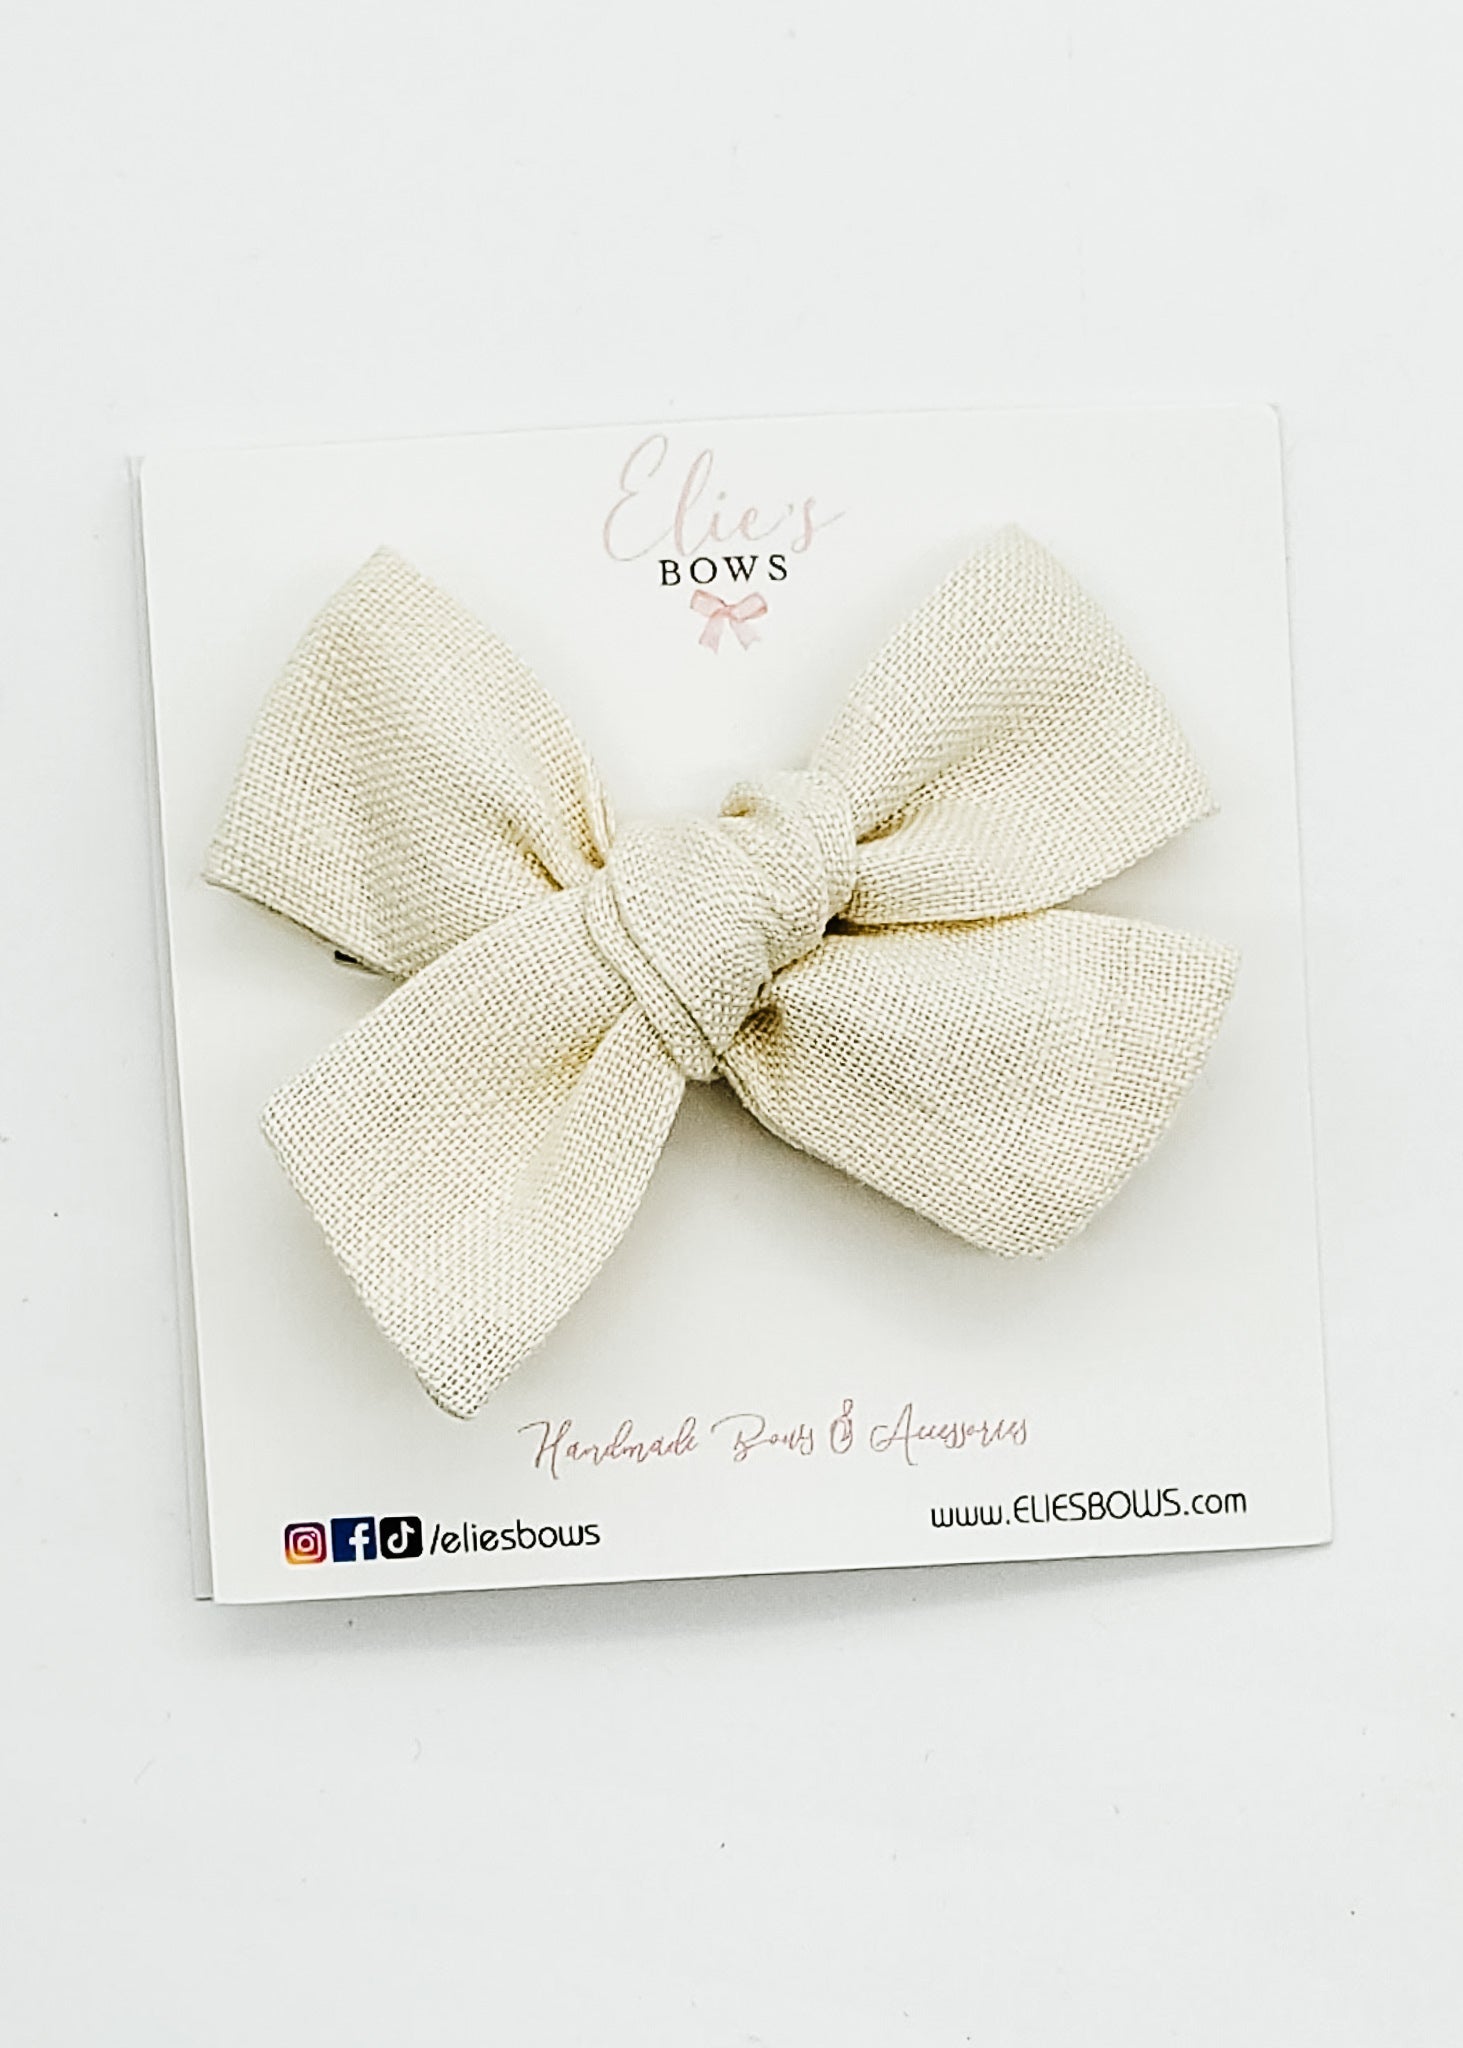 Beige Linen - Elie Fabric Bow - 3.2"-Bows-Elie’s Bows